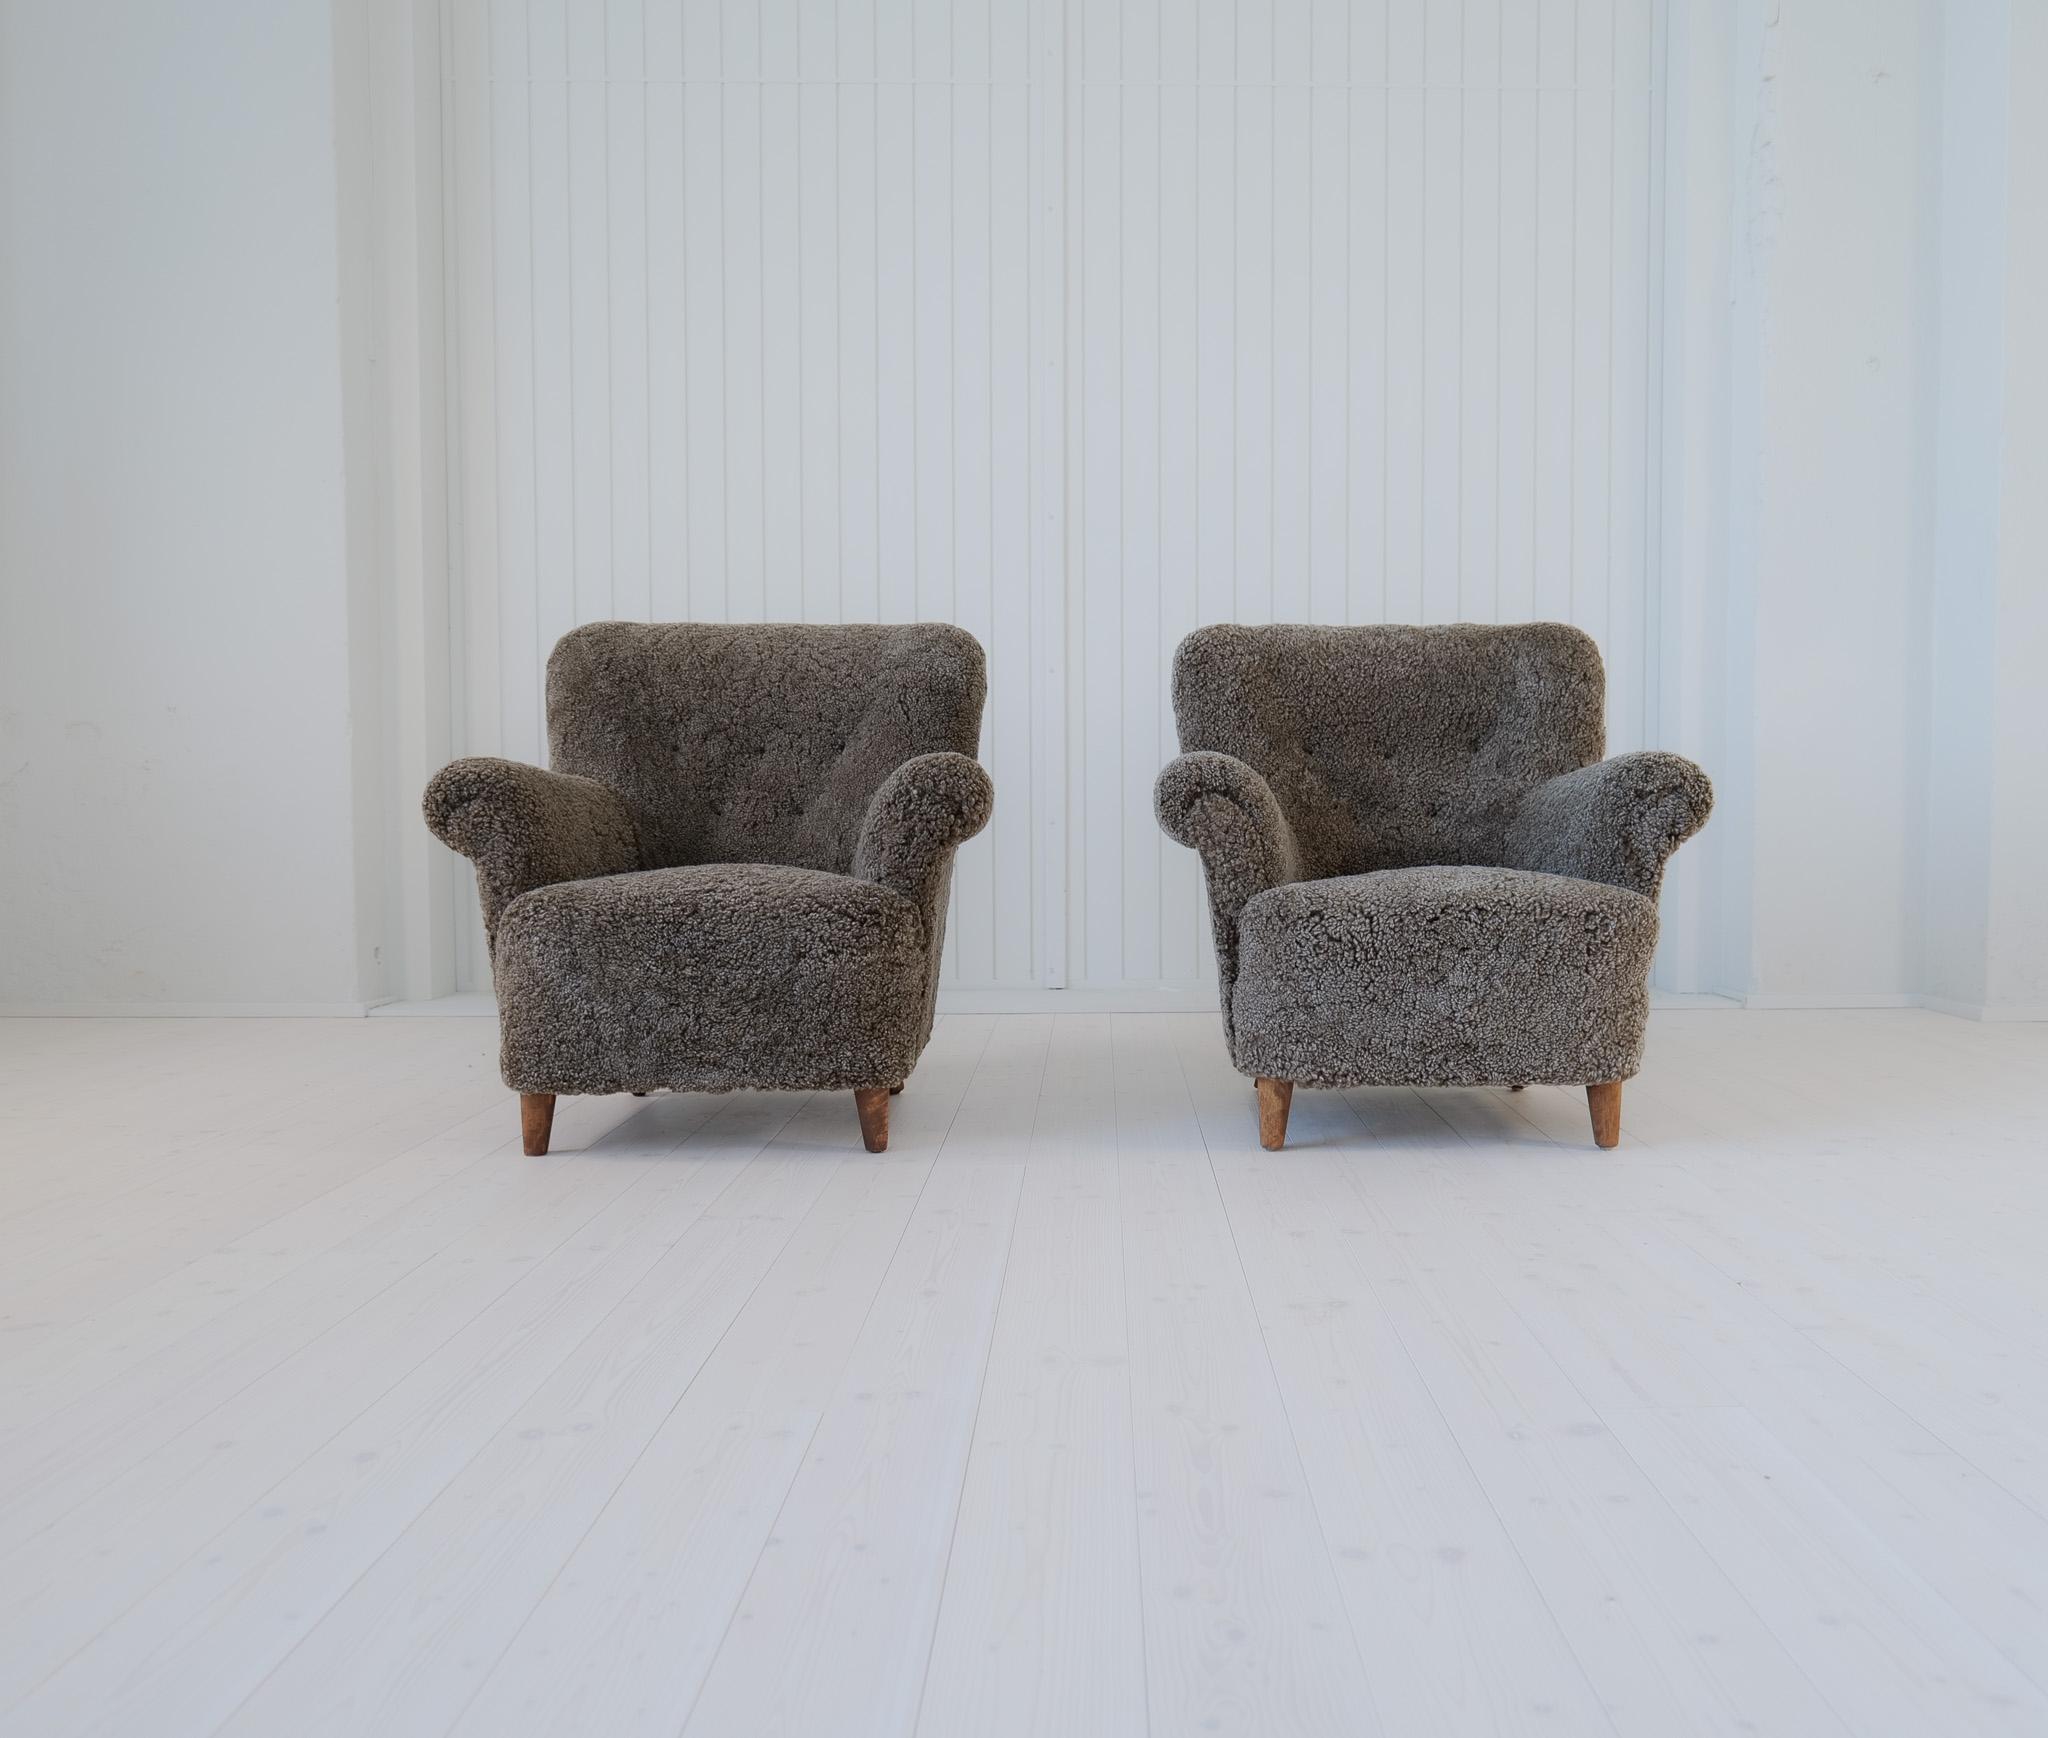 Paire de chaises de salon modernes suédoises, avec l'aspect typique de l'époque.
Ceux-ci sont entièrement restaurés et recouverts de peau de mouton noir/gris - Shearling.
Il est beau à regarder et confortable à s'asseoir. Les pieds sont en bouleau